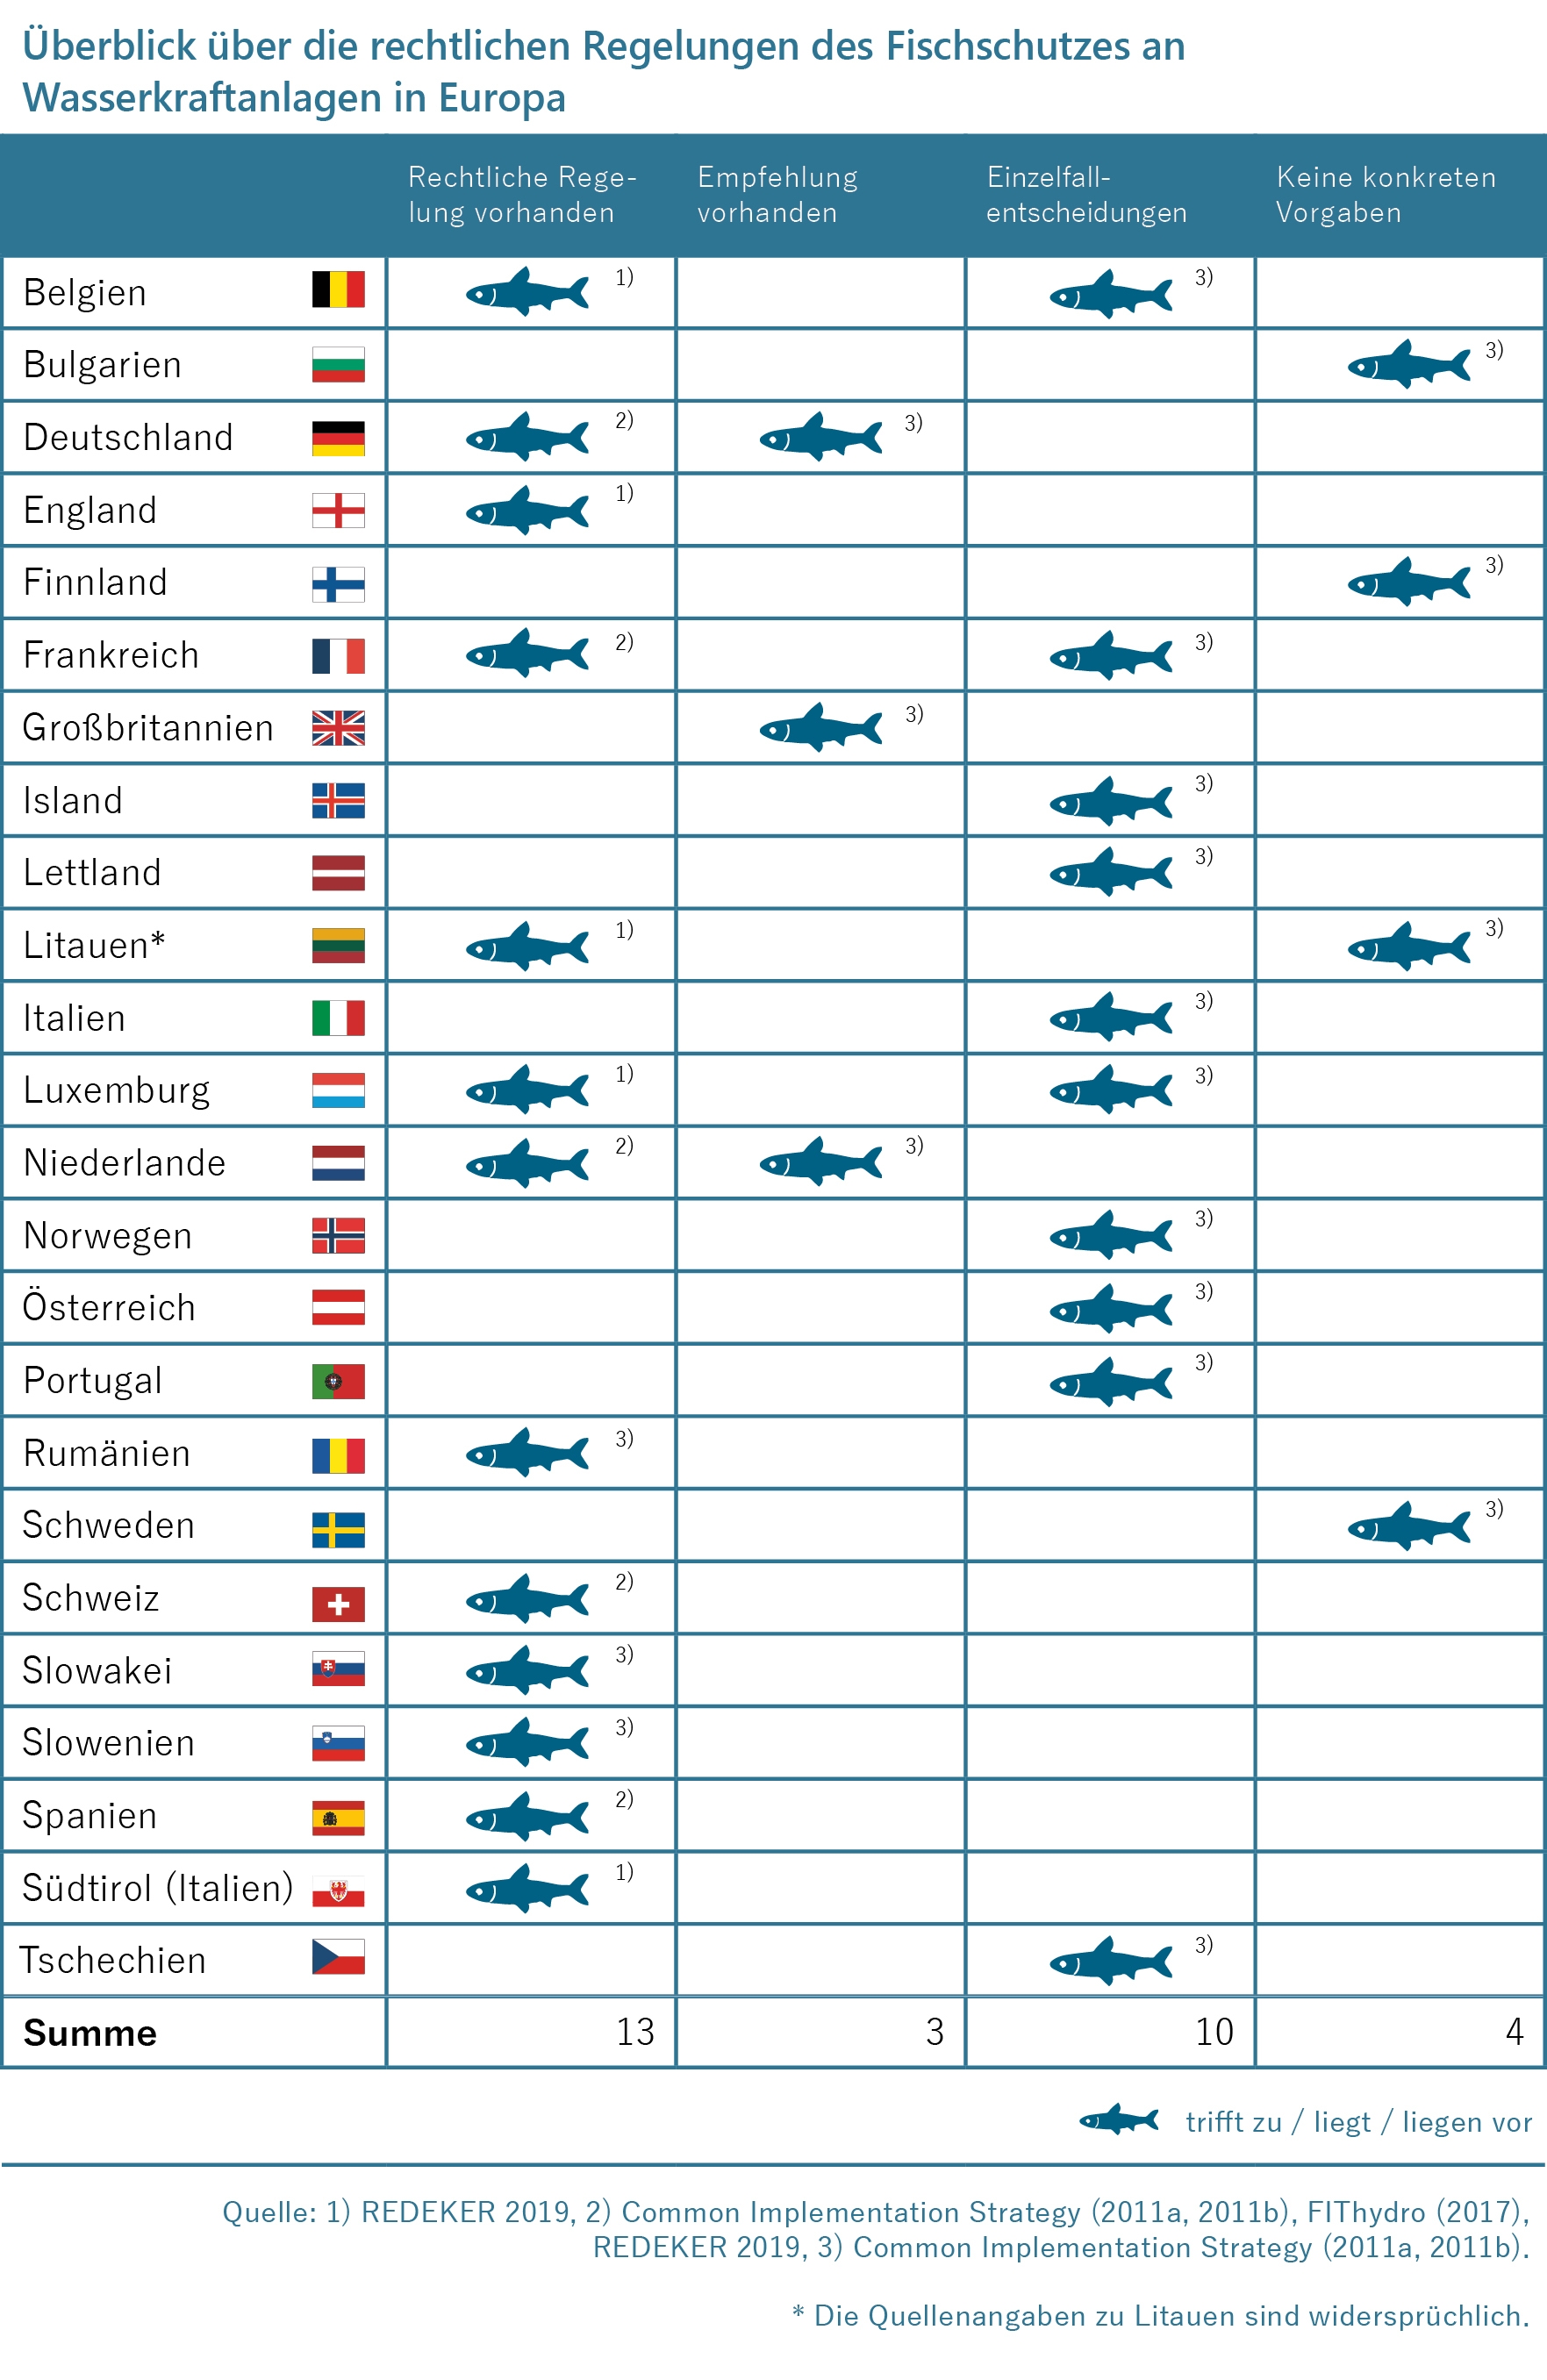 Überblick über die rechtlichen Regelungen des Fischschutzes an Wassekraftanlagen in Europa